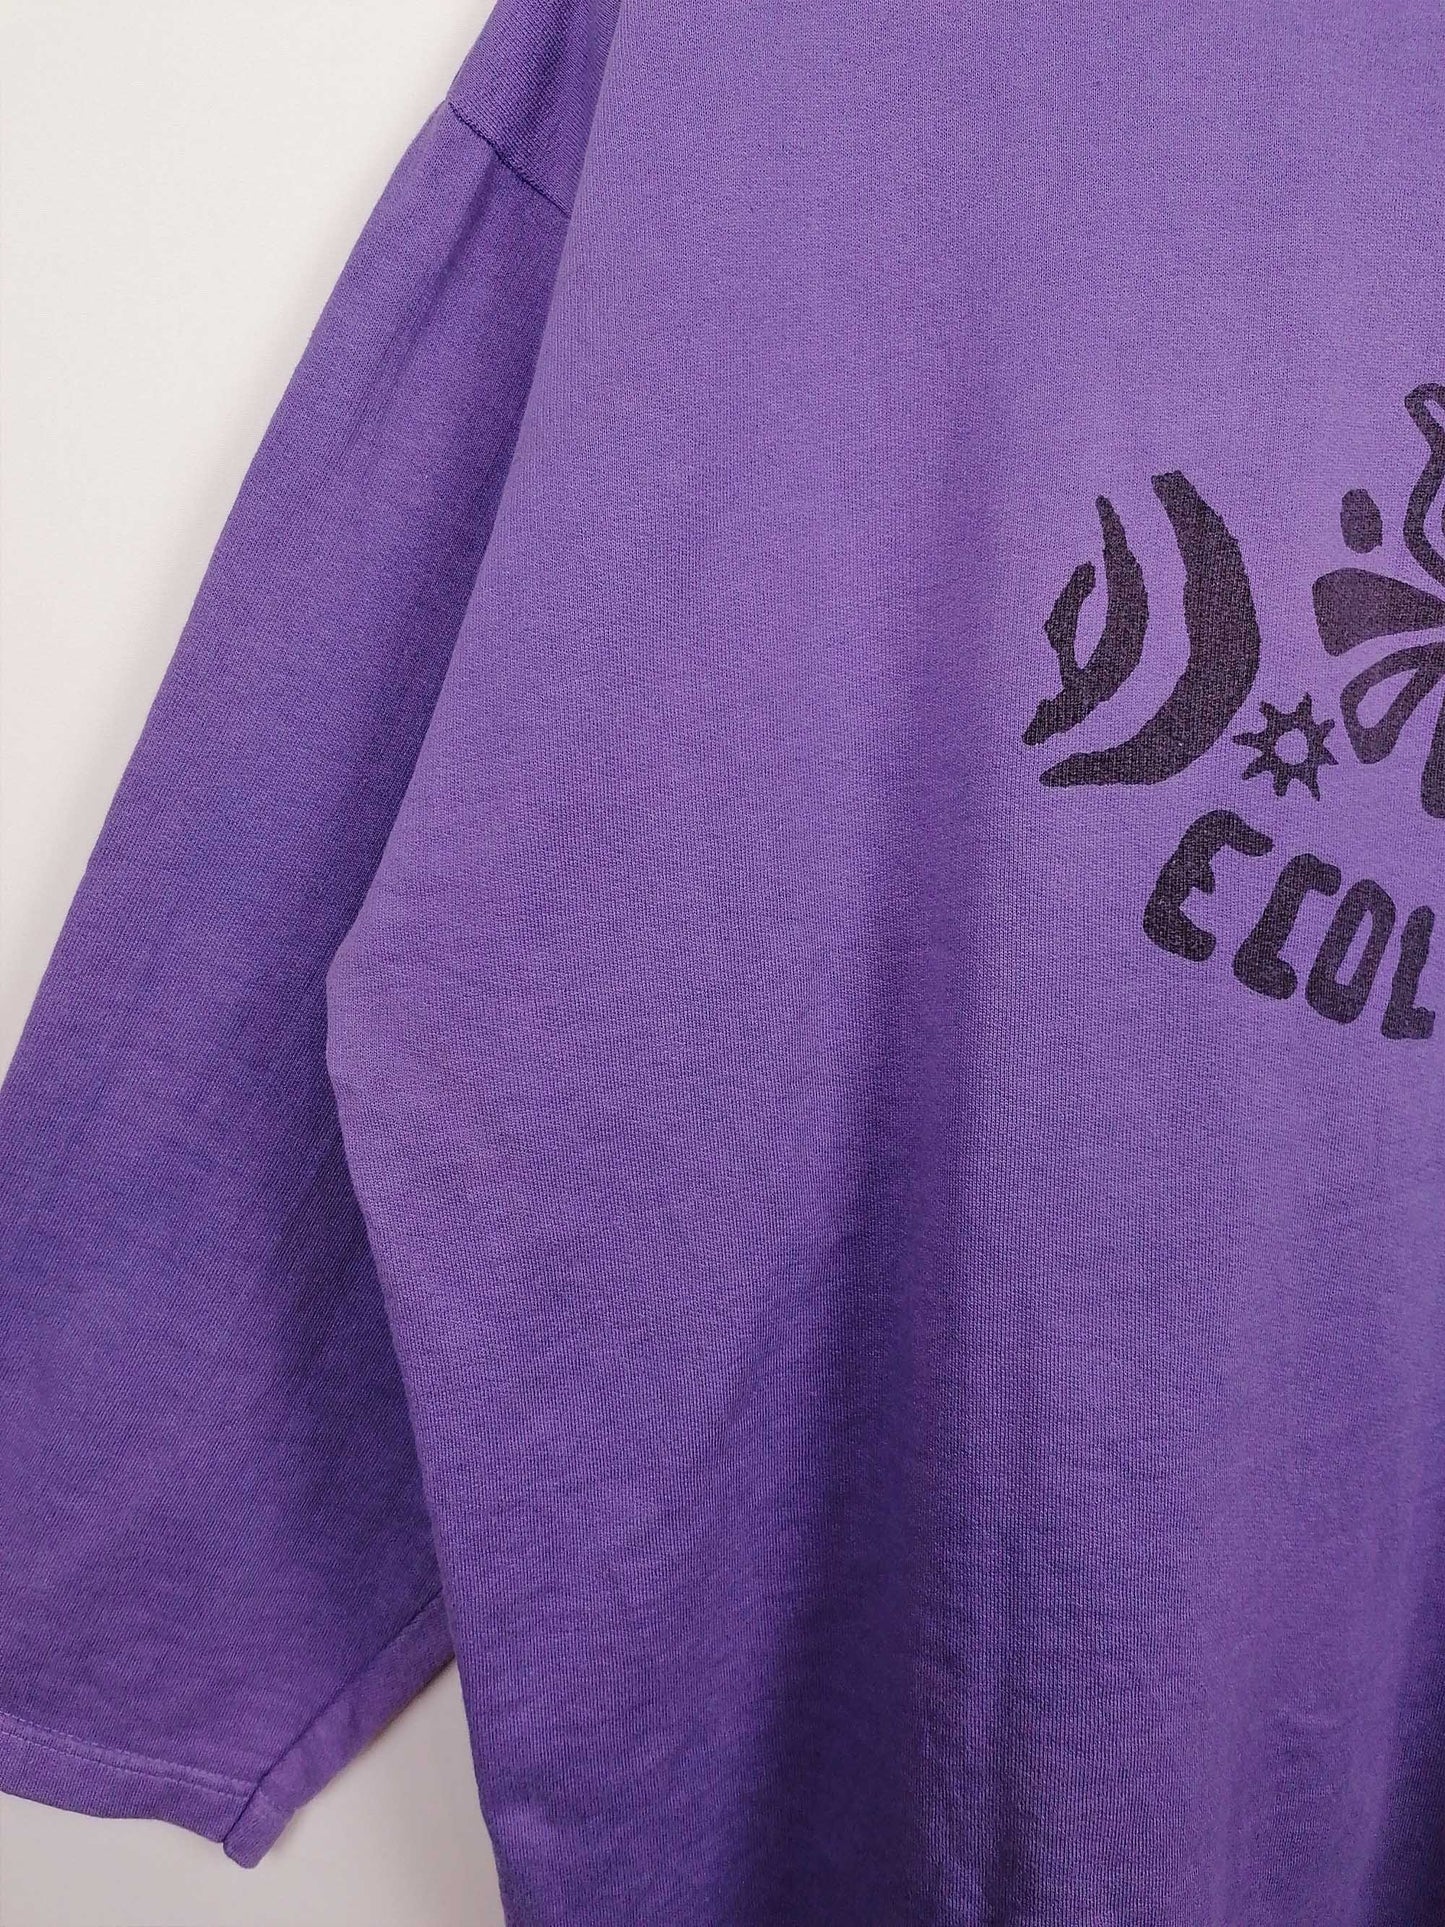 "Ecologie" Faded 80's Sweatshirt - size L